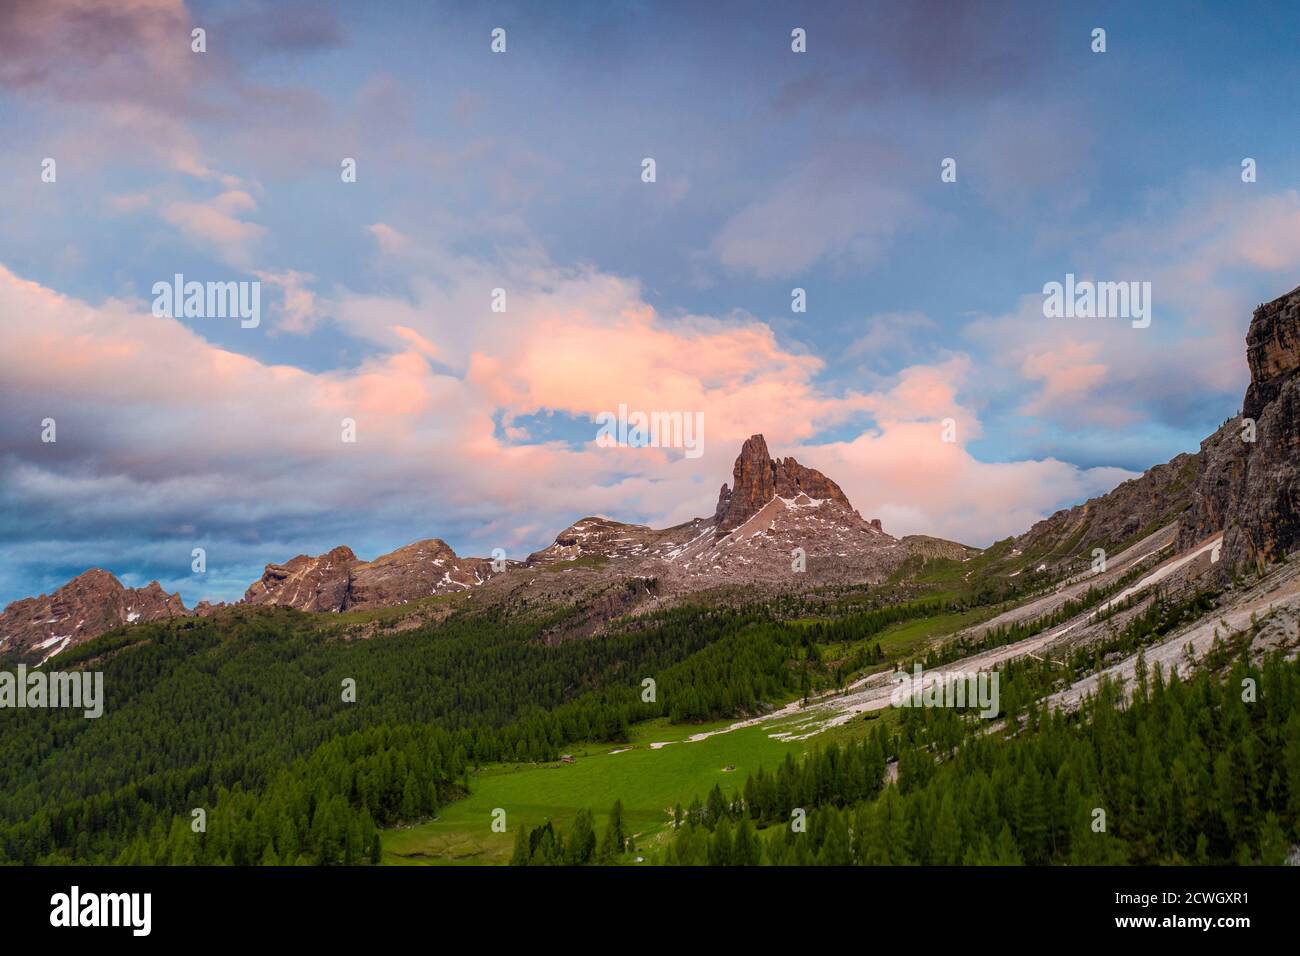 Coucher de soleil sur le pic rocheux de Becco di Mezzodi et les bois environnants en été, Dolomites d'Ampezzo, province de Belluno, Vénétie, Italie Banque D'Images